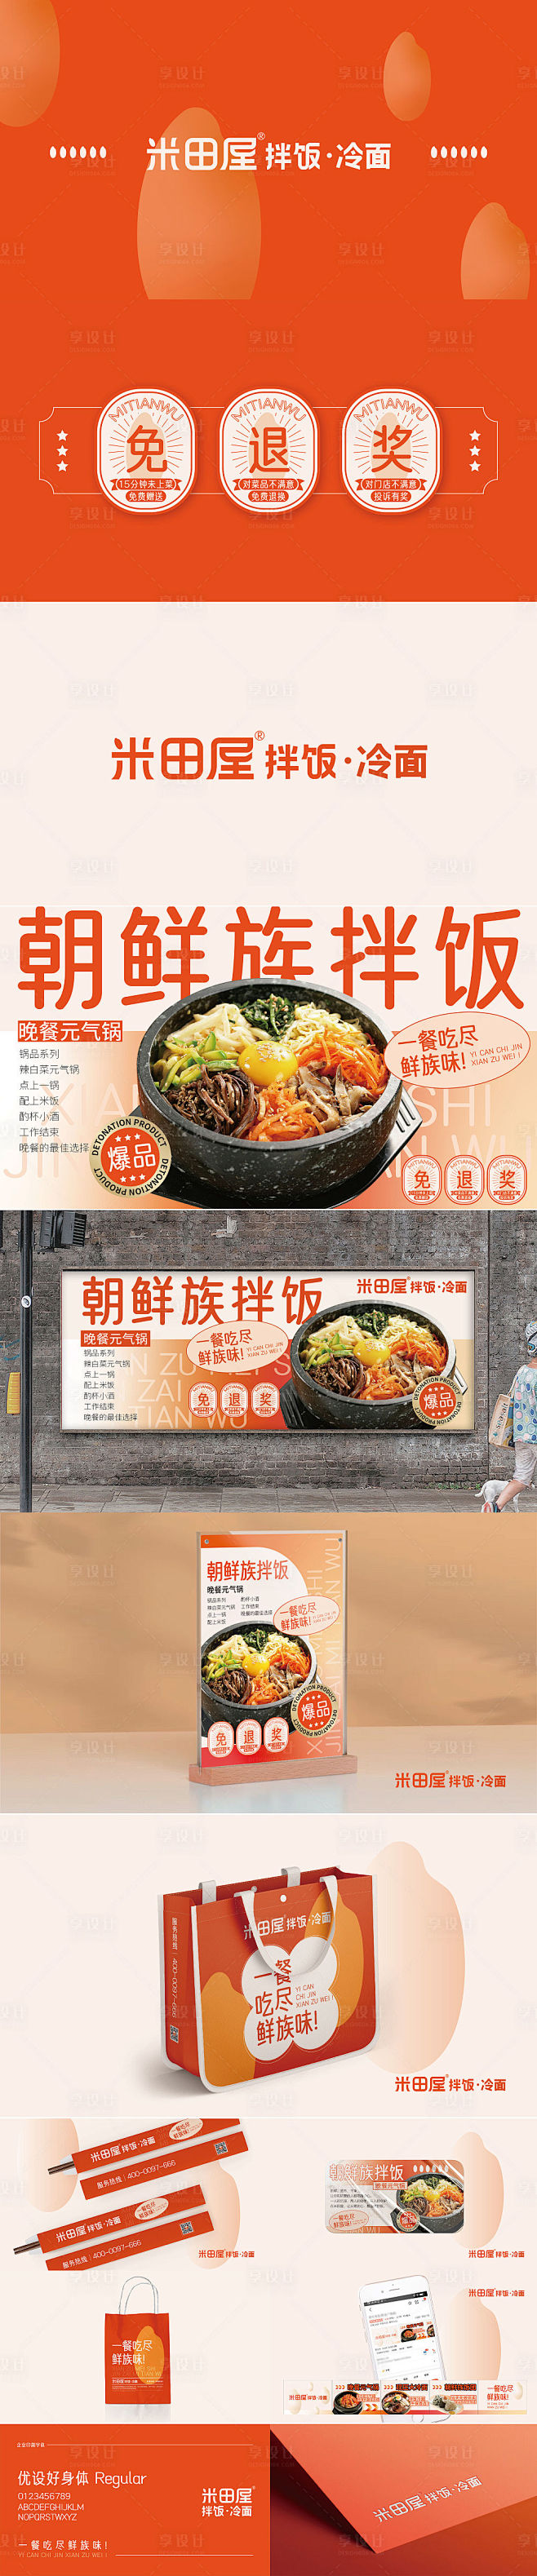 朝鲜族拌饭冷面餐饮设计LOGO -素材库...